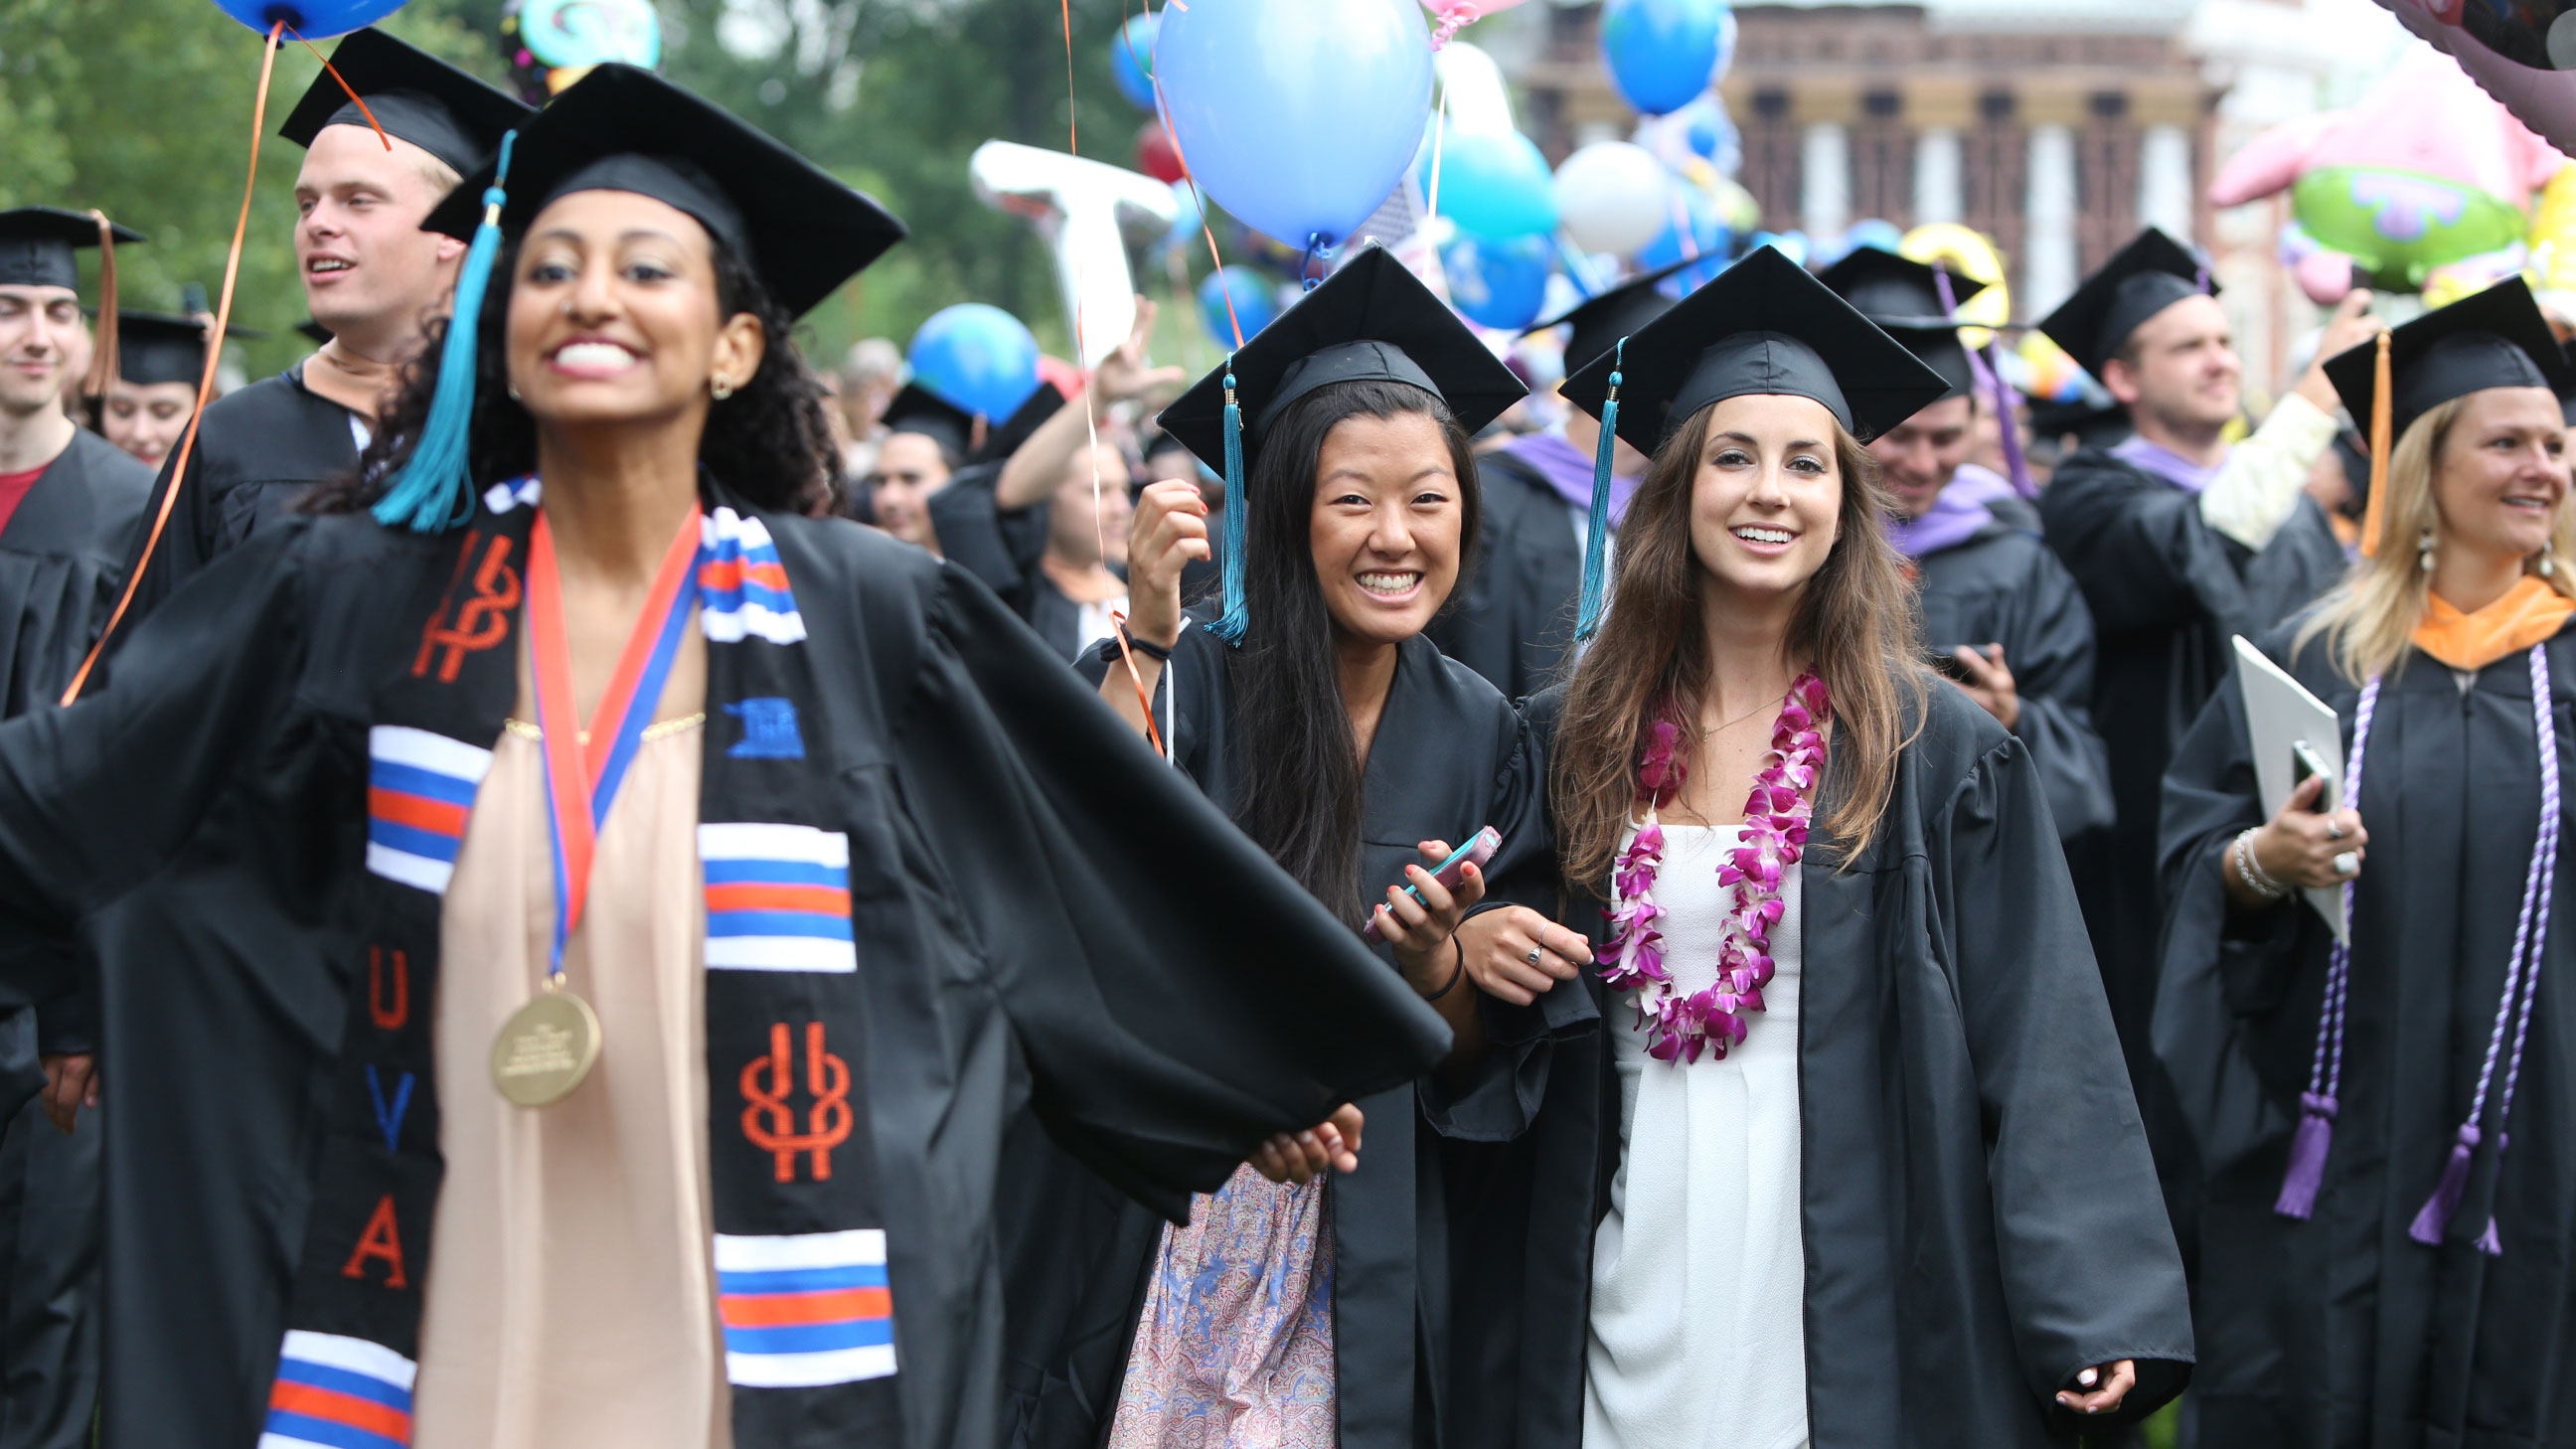 Graduates walking and smiling at the camera